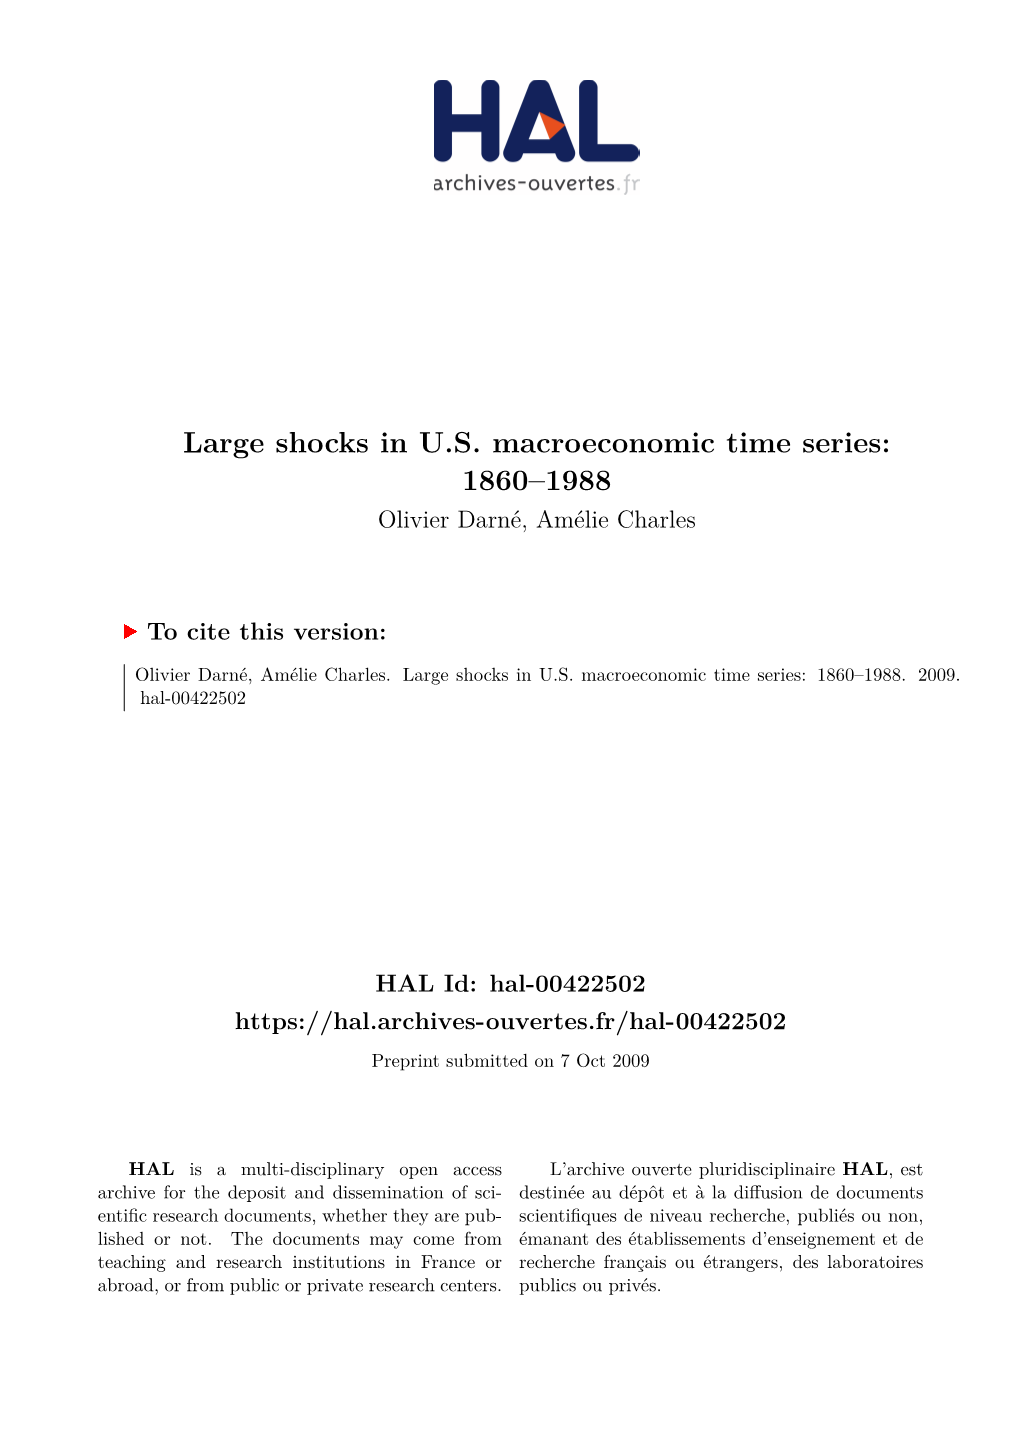 Large Shocks in US Macroeconomic Time Series